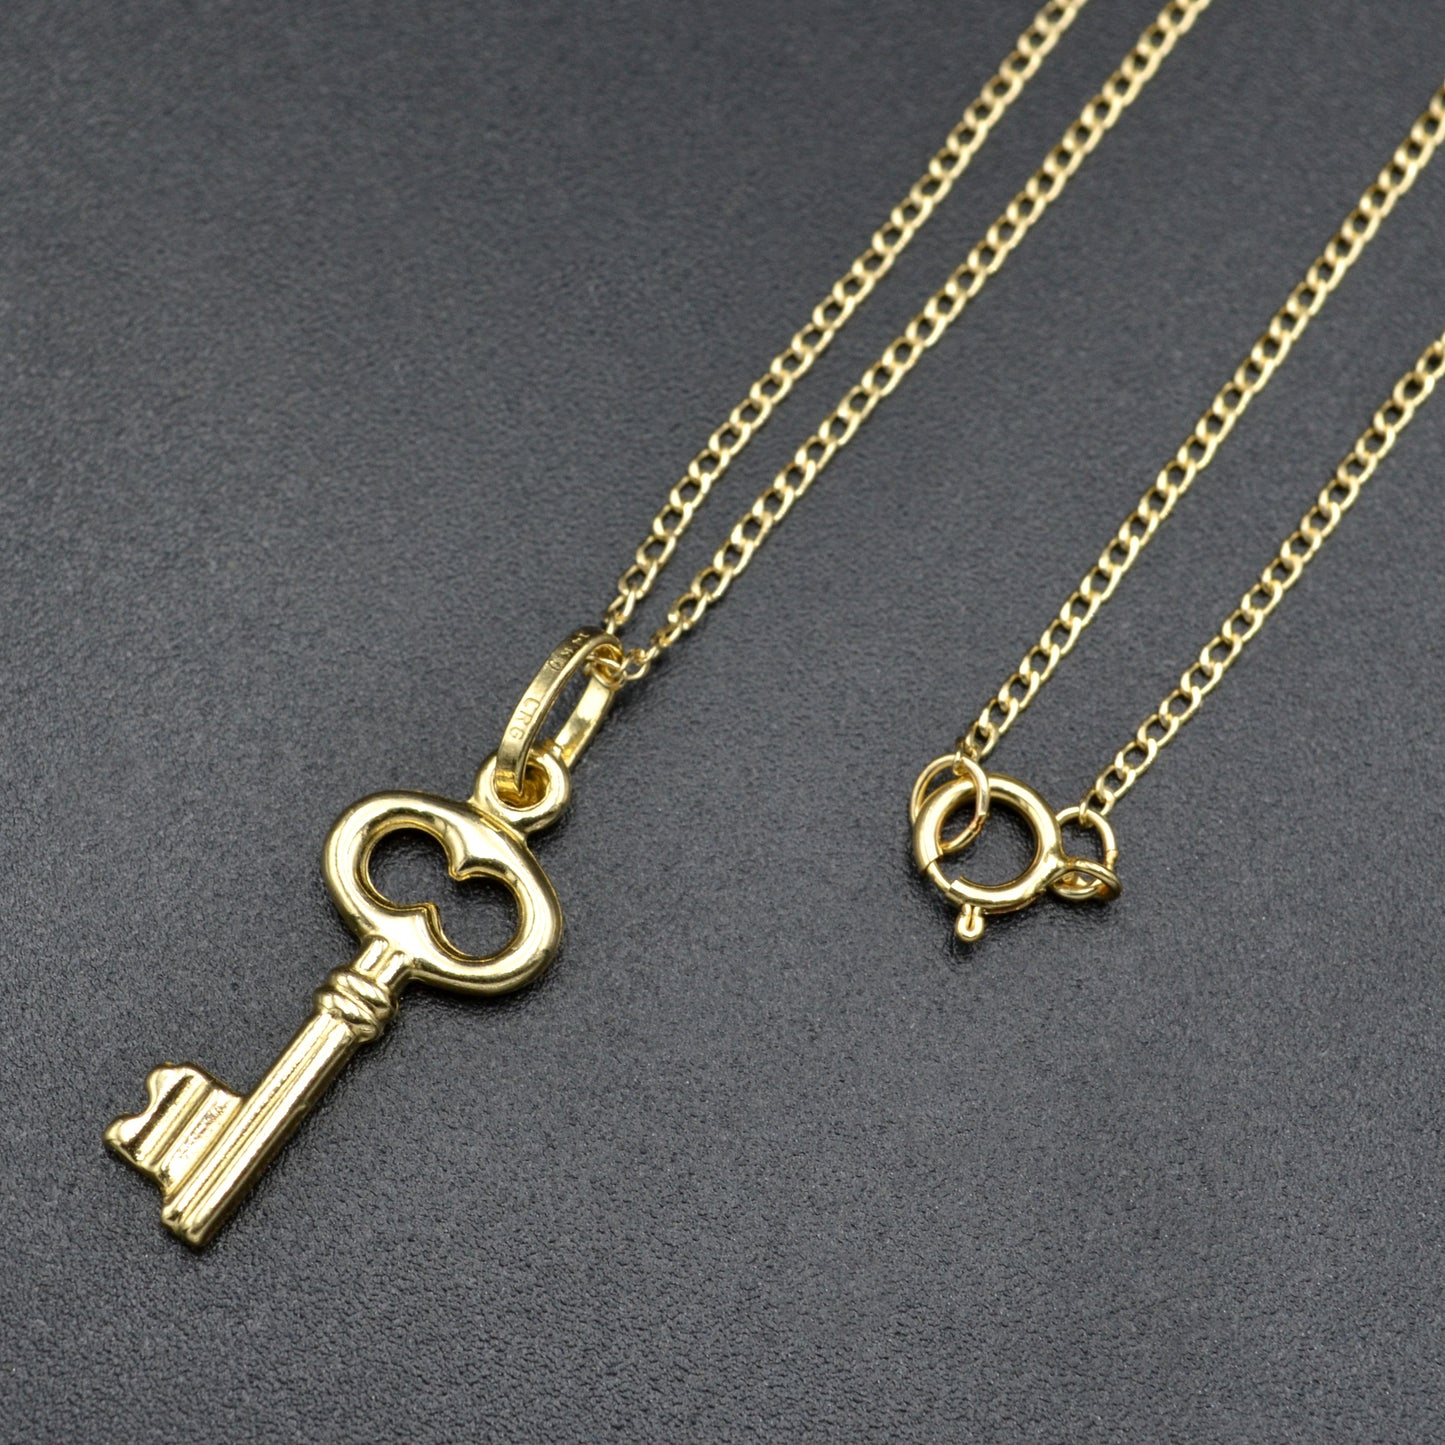 Vintage 14k Gold Skeleton Key Charm Pendant Necklace